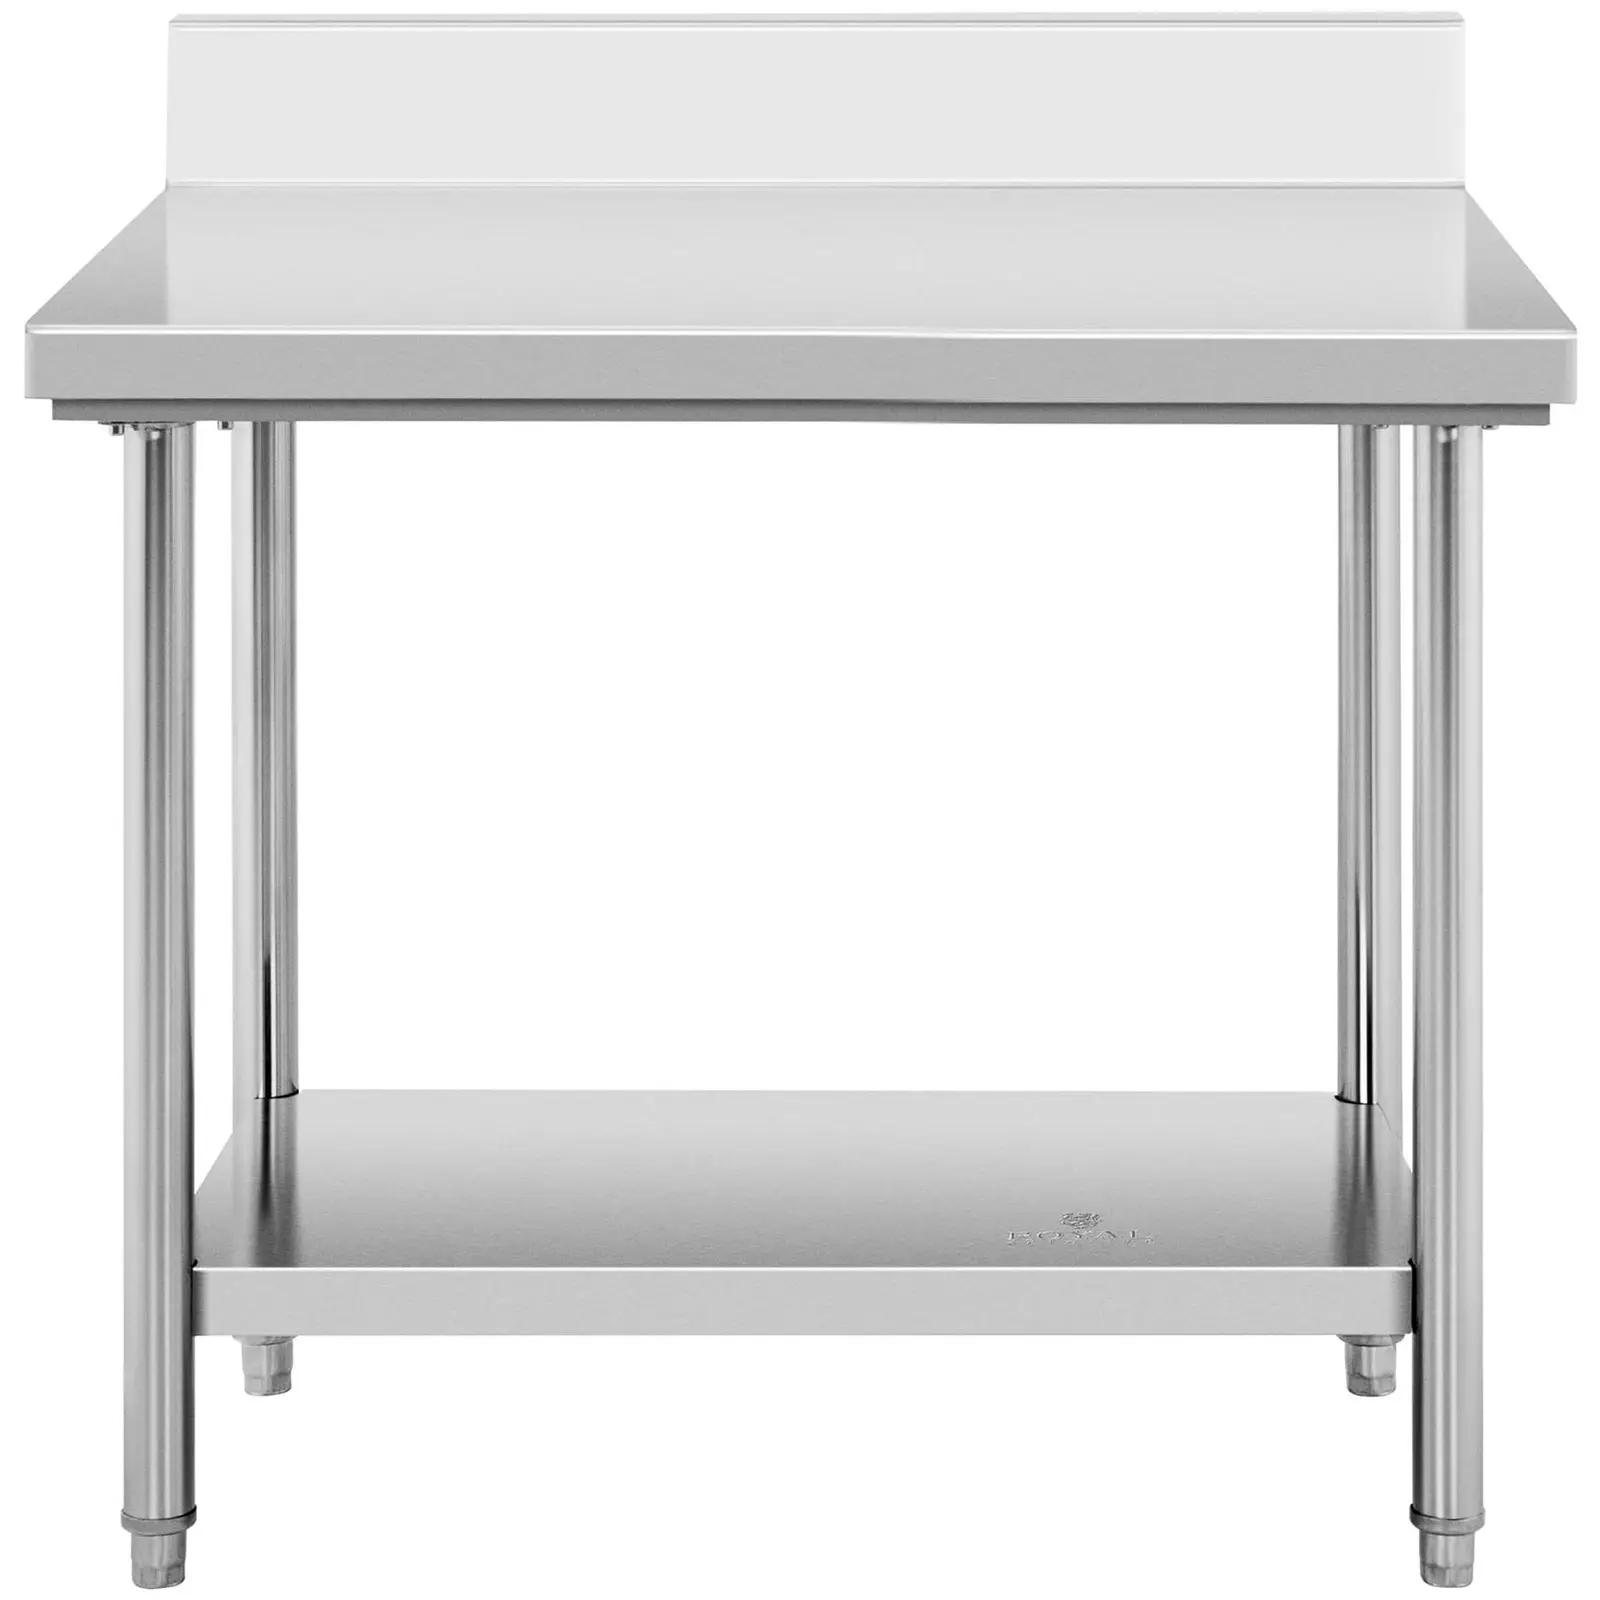 Table de travail inox avec dosseret - 100 x 60 cm - Capacité de 114 kg